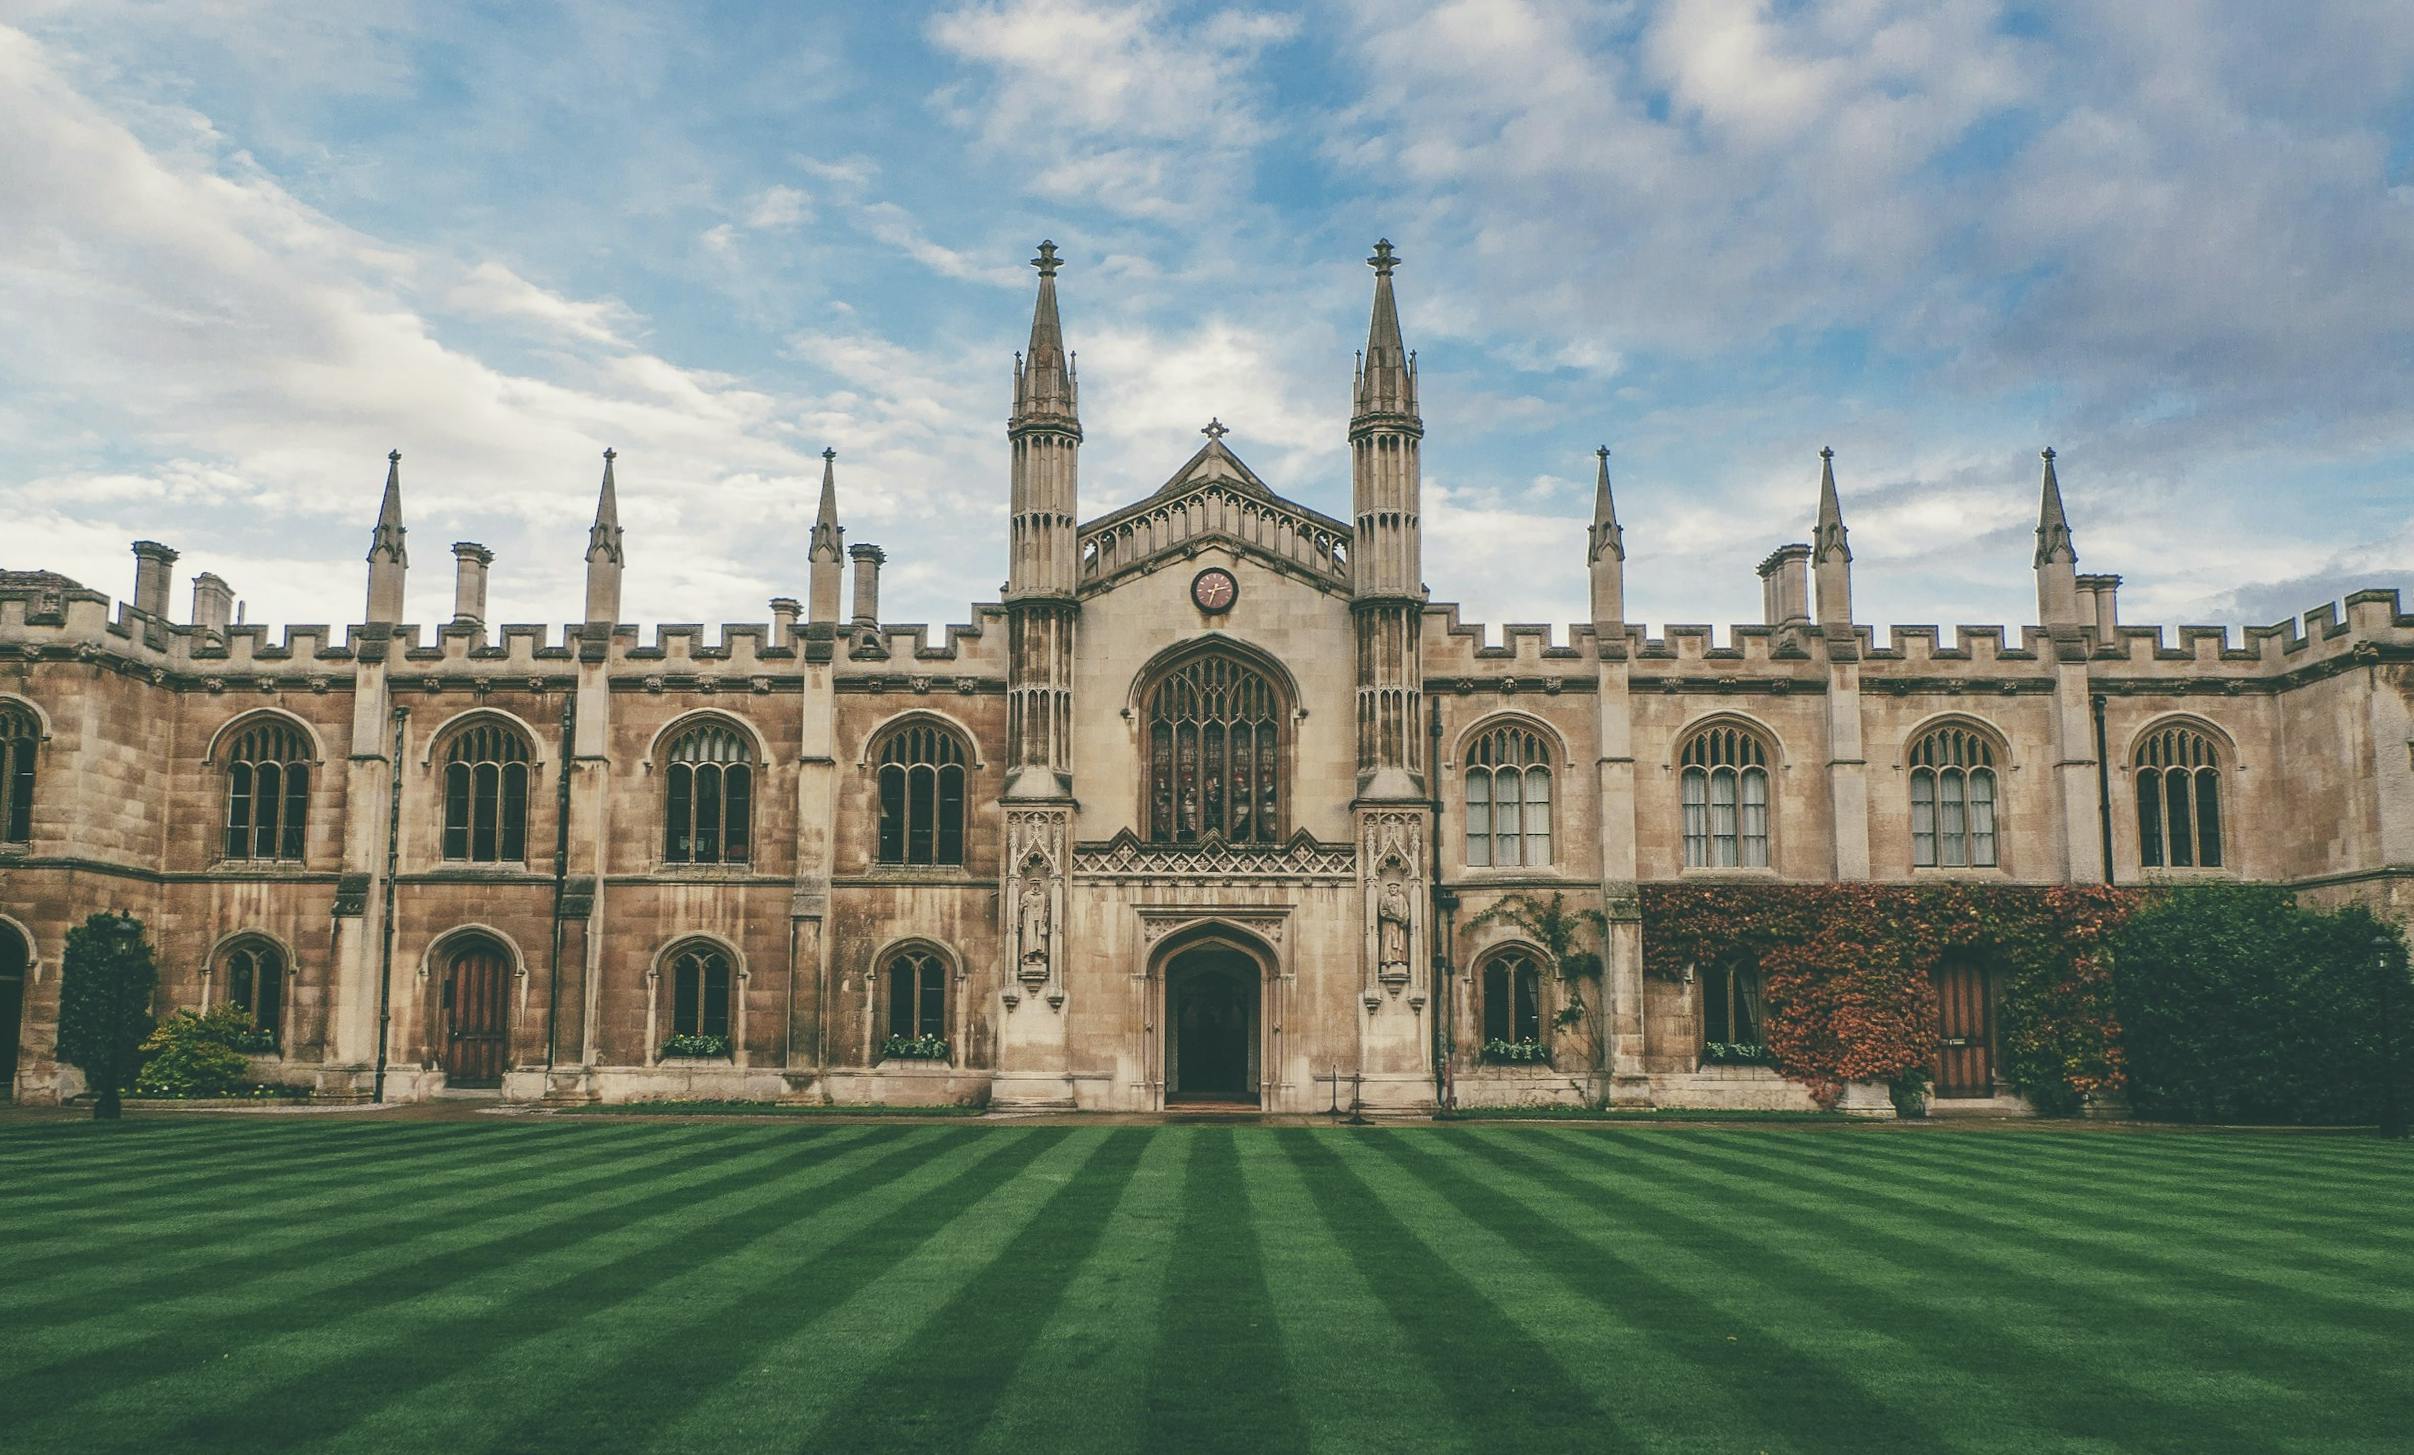 Edificio storico dell'Università di Cambridge fotografato in una giornata di cielo azzurro.